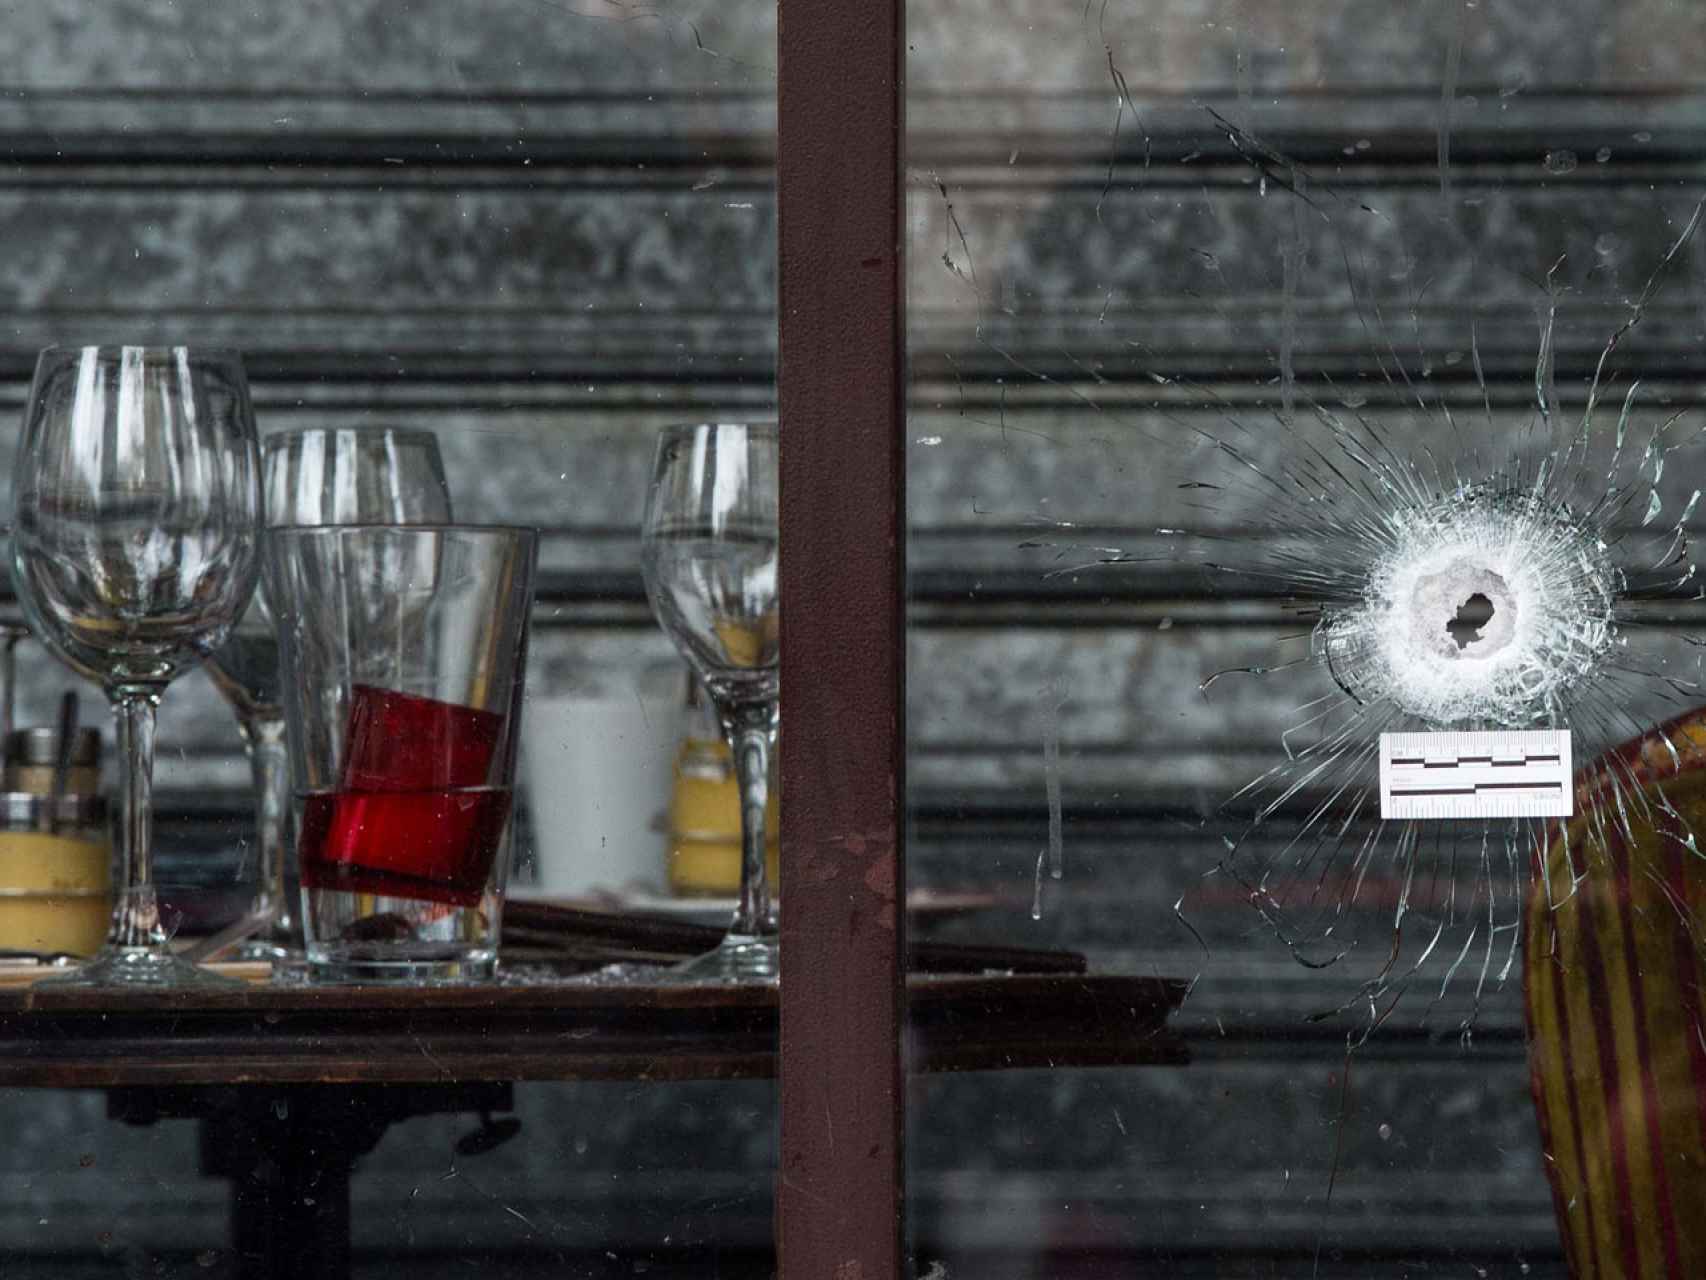 El impacto de una bala en el escaparate del Café Bonne Biére.